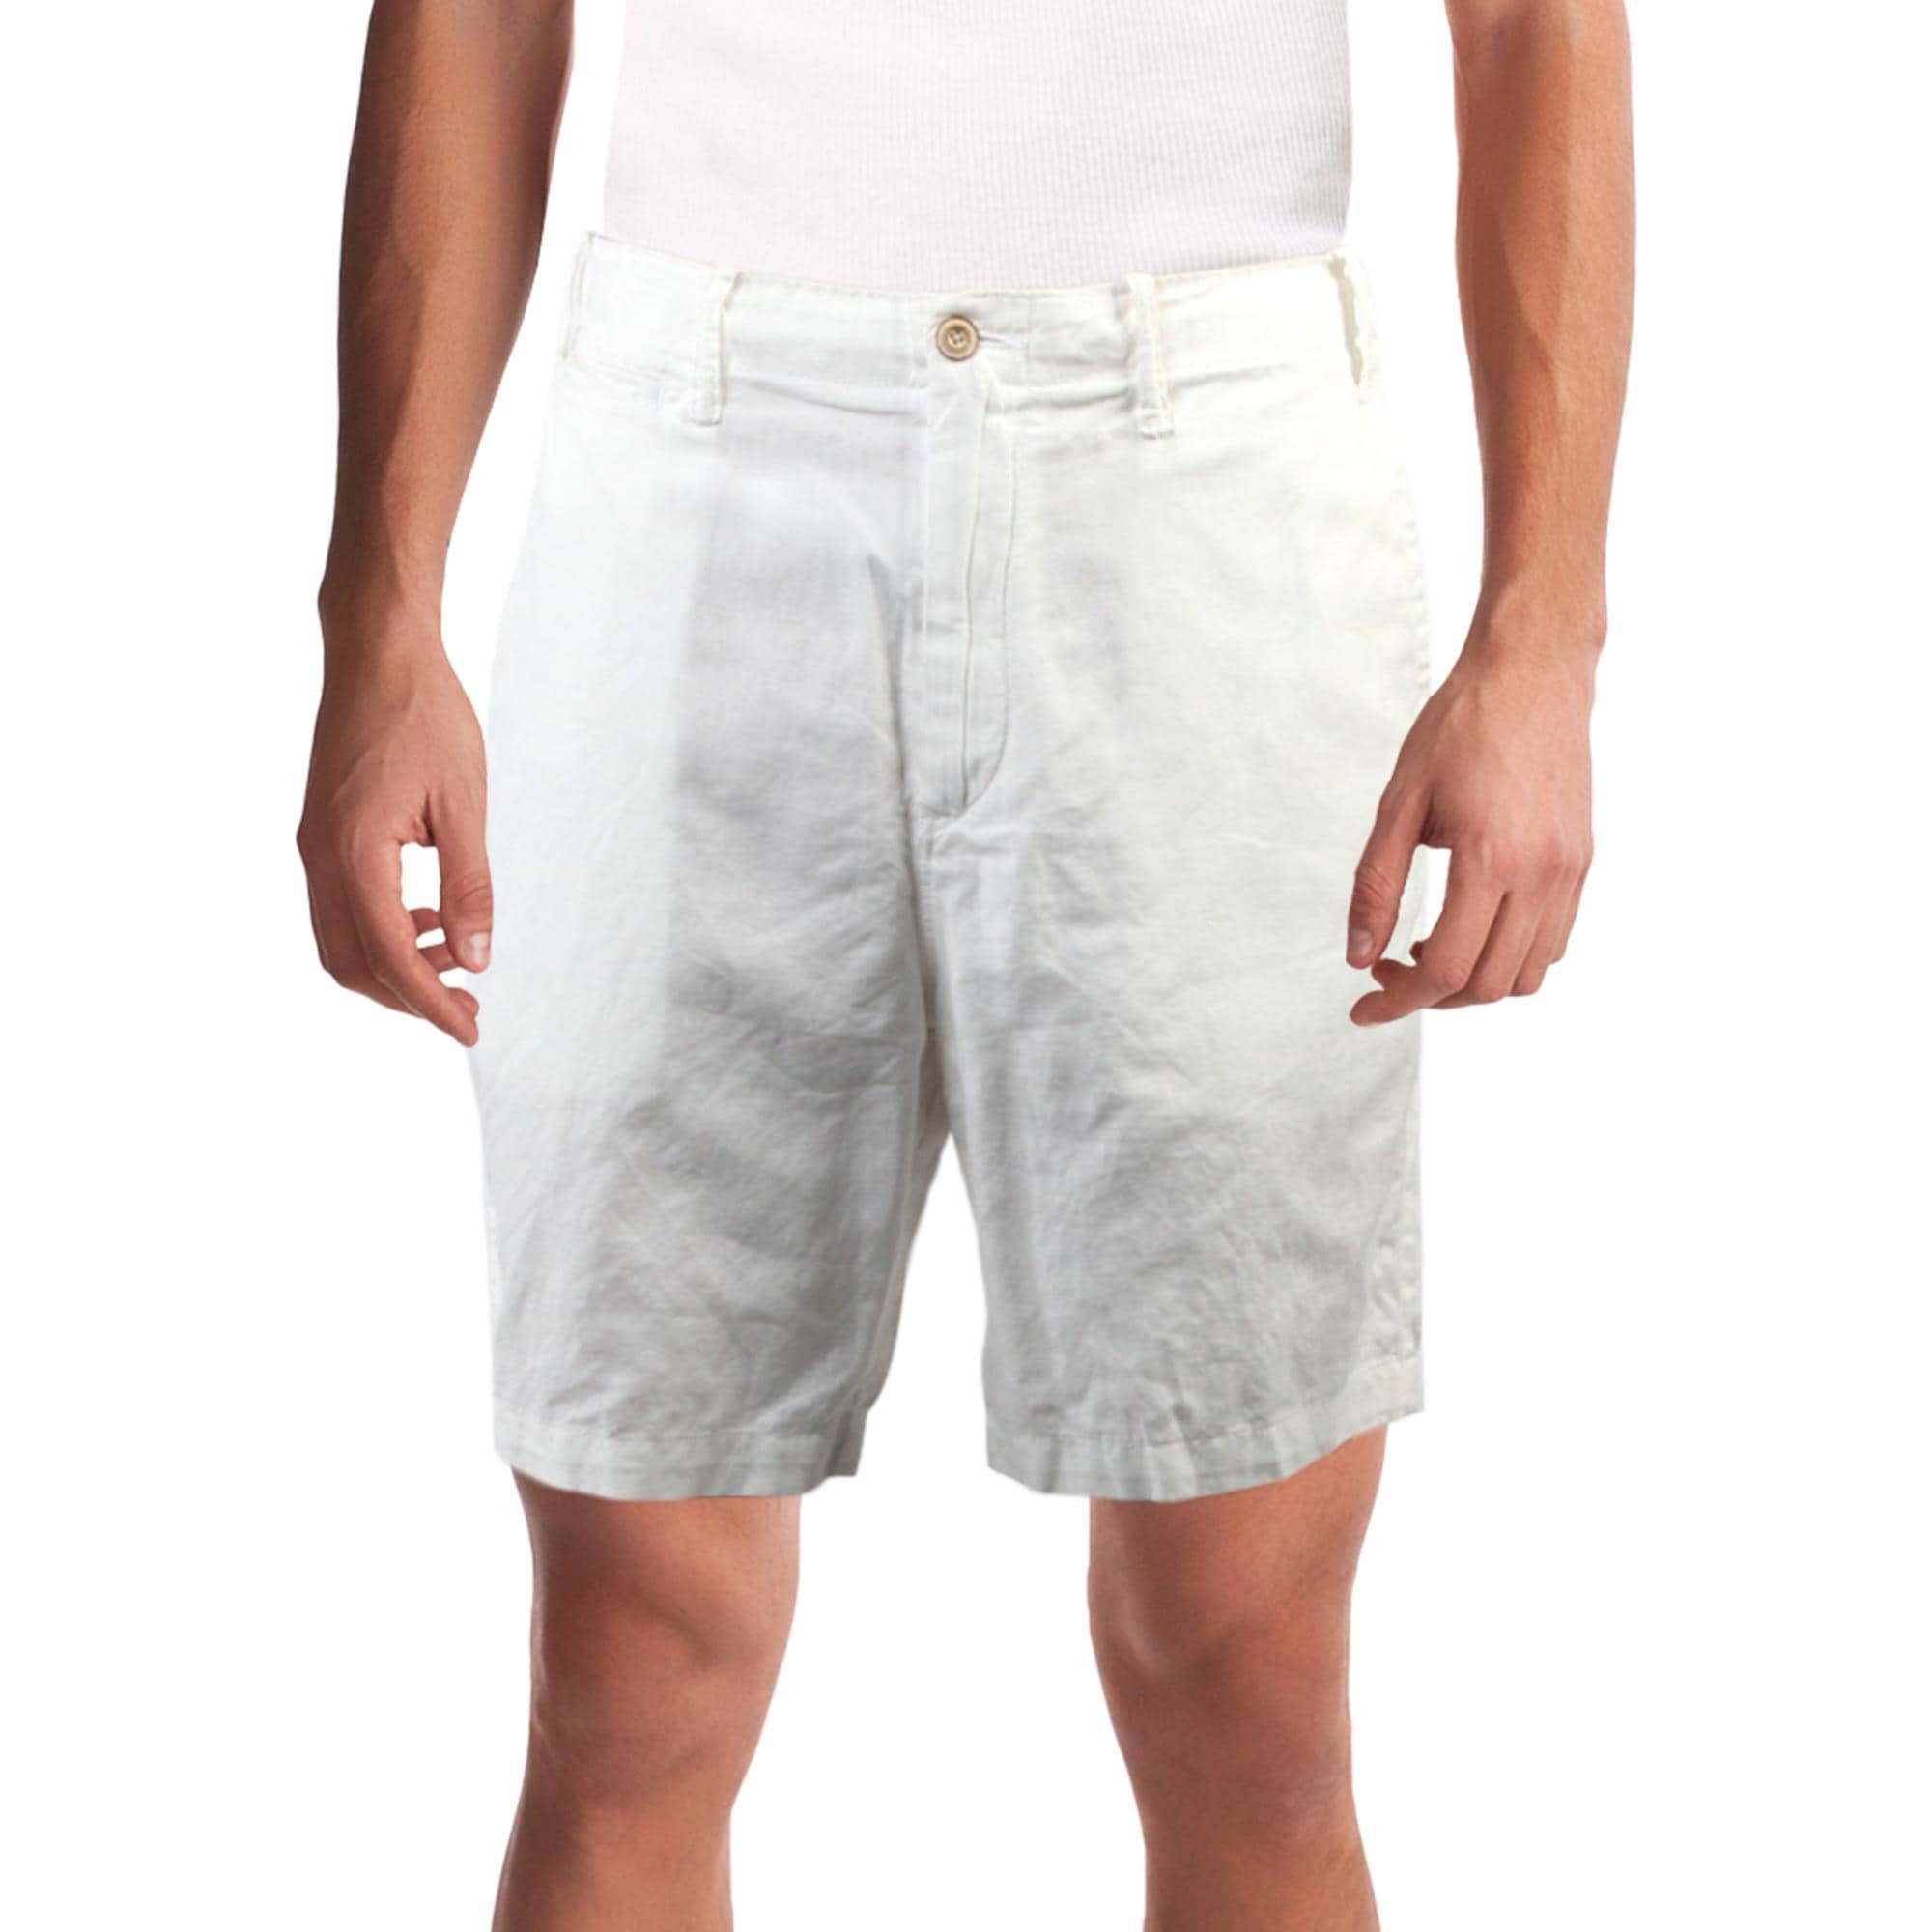 ralph lauren white chino shorts